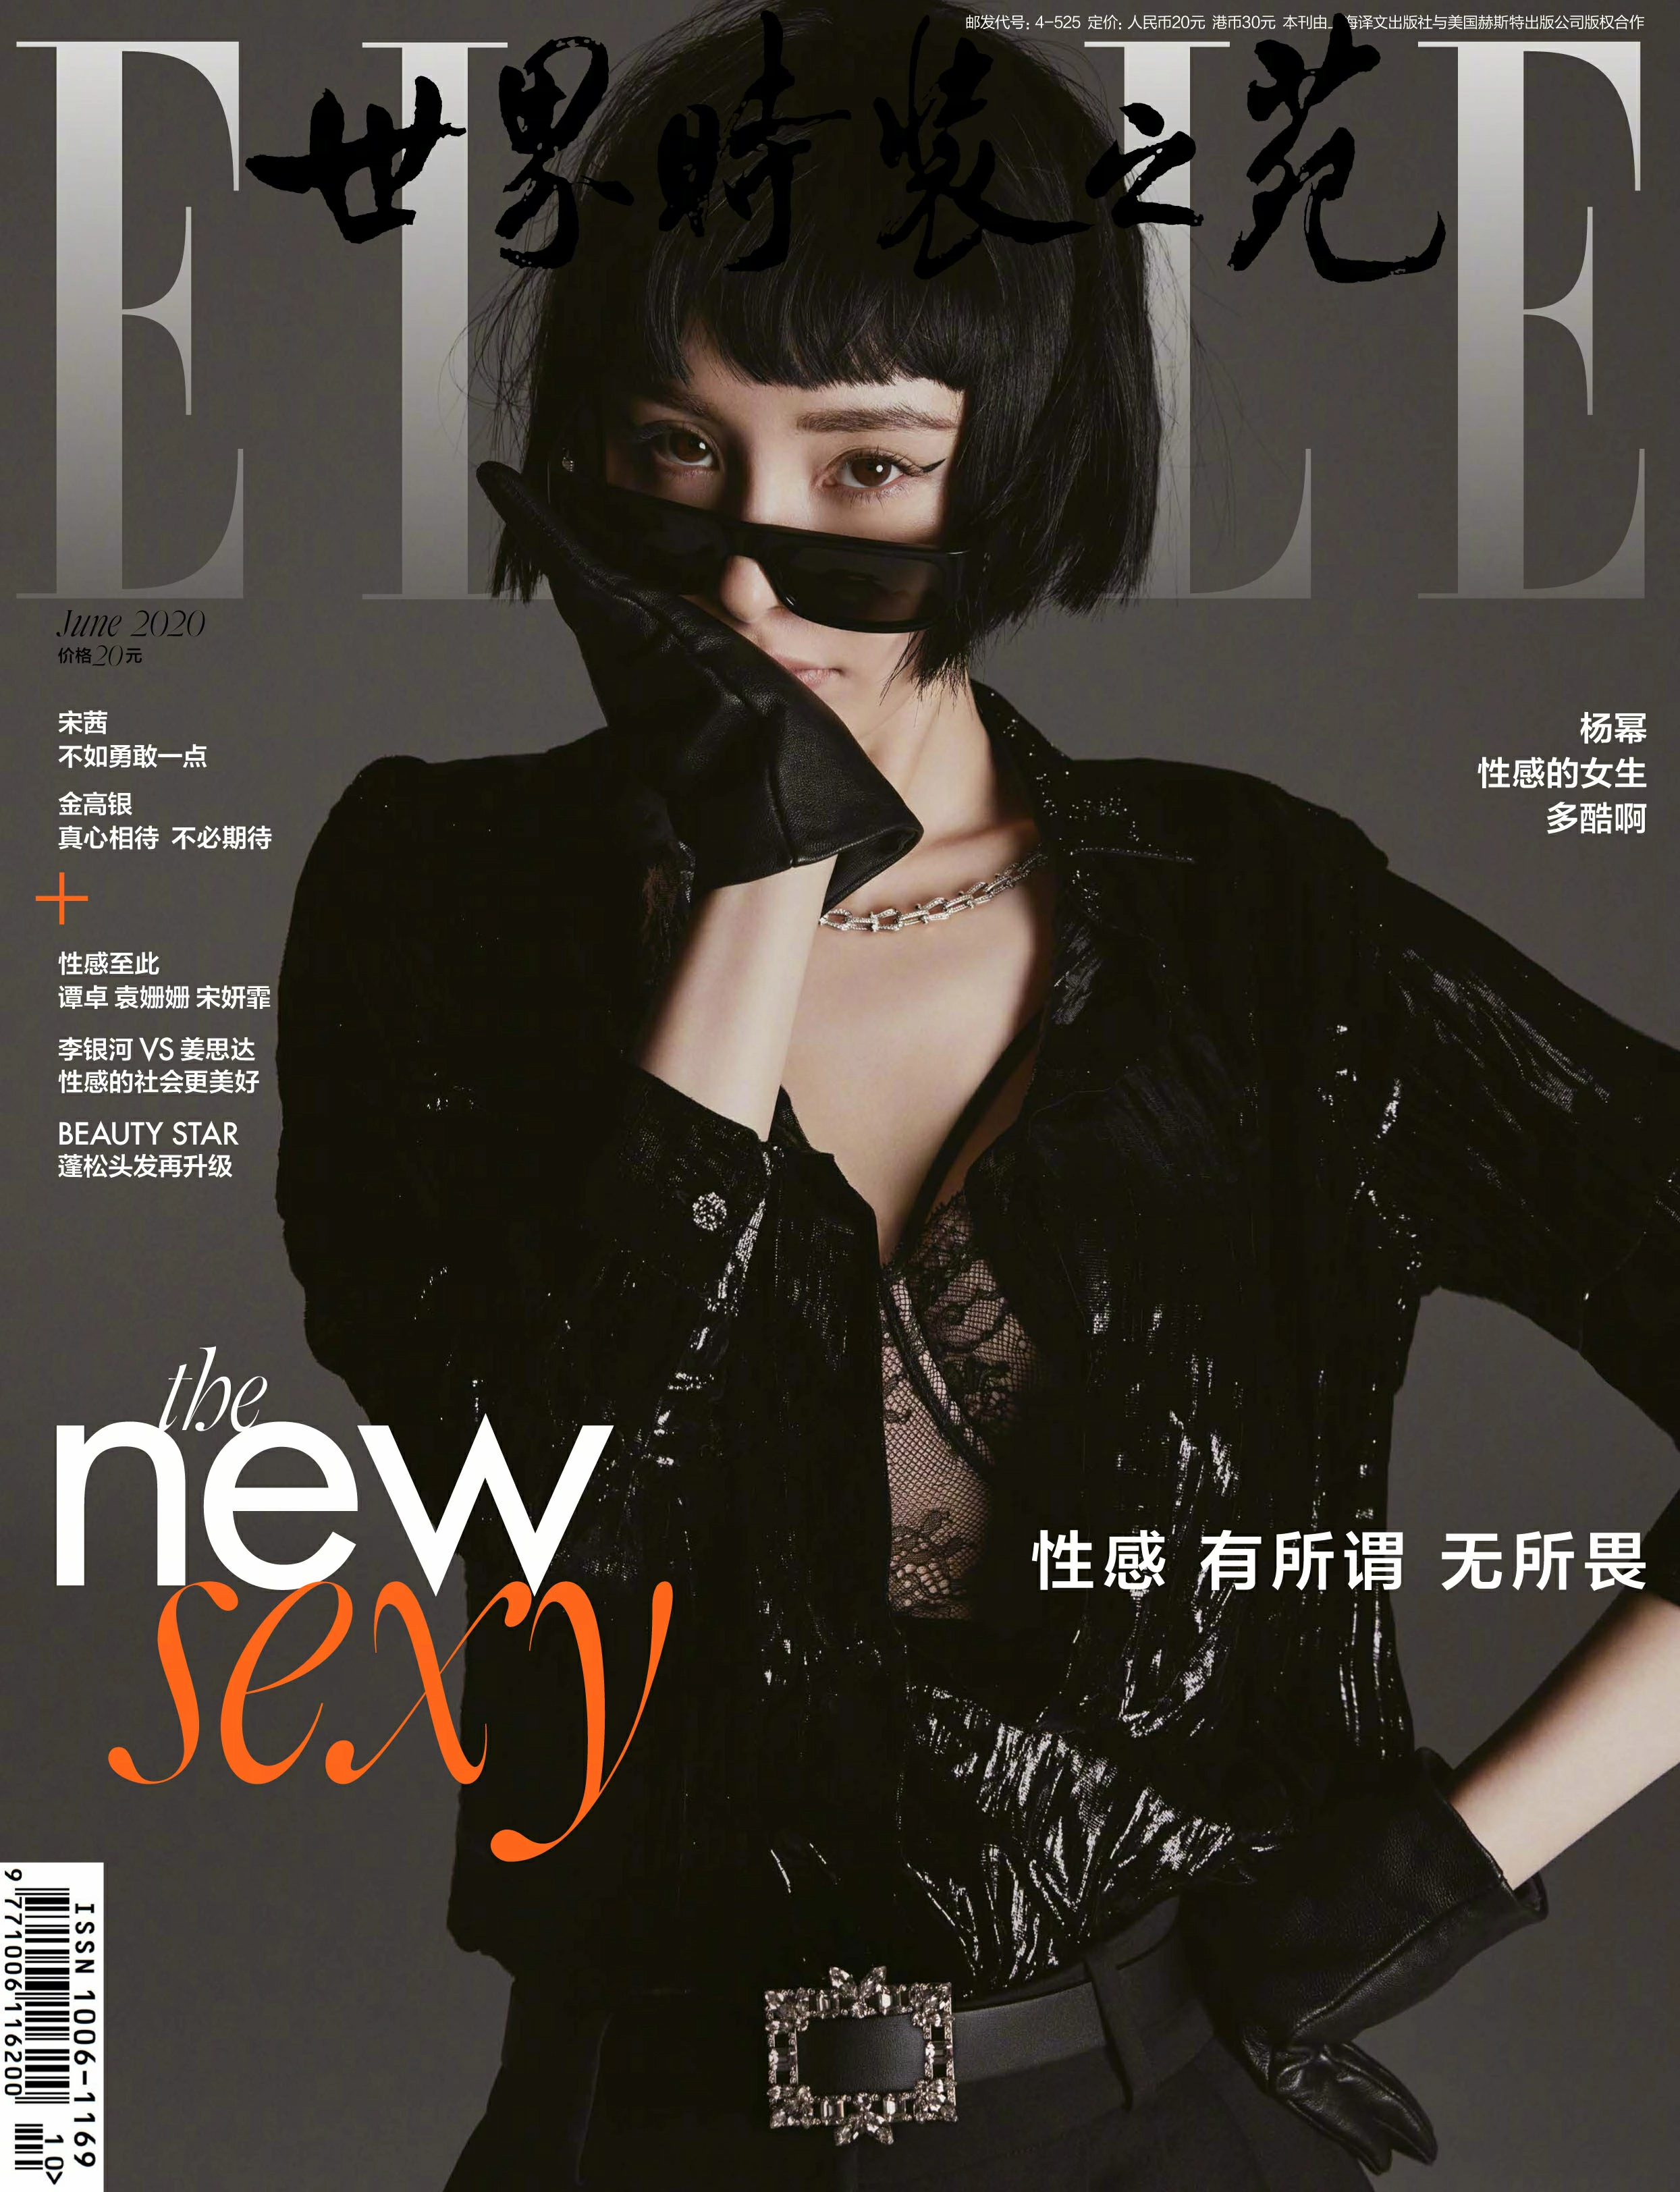 《ELLE》六月刊双封面 杨幂尝试短发造型又酷又飒 变身性感御姐大长腿迷人,